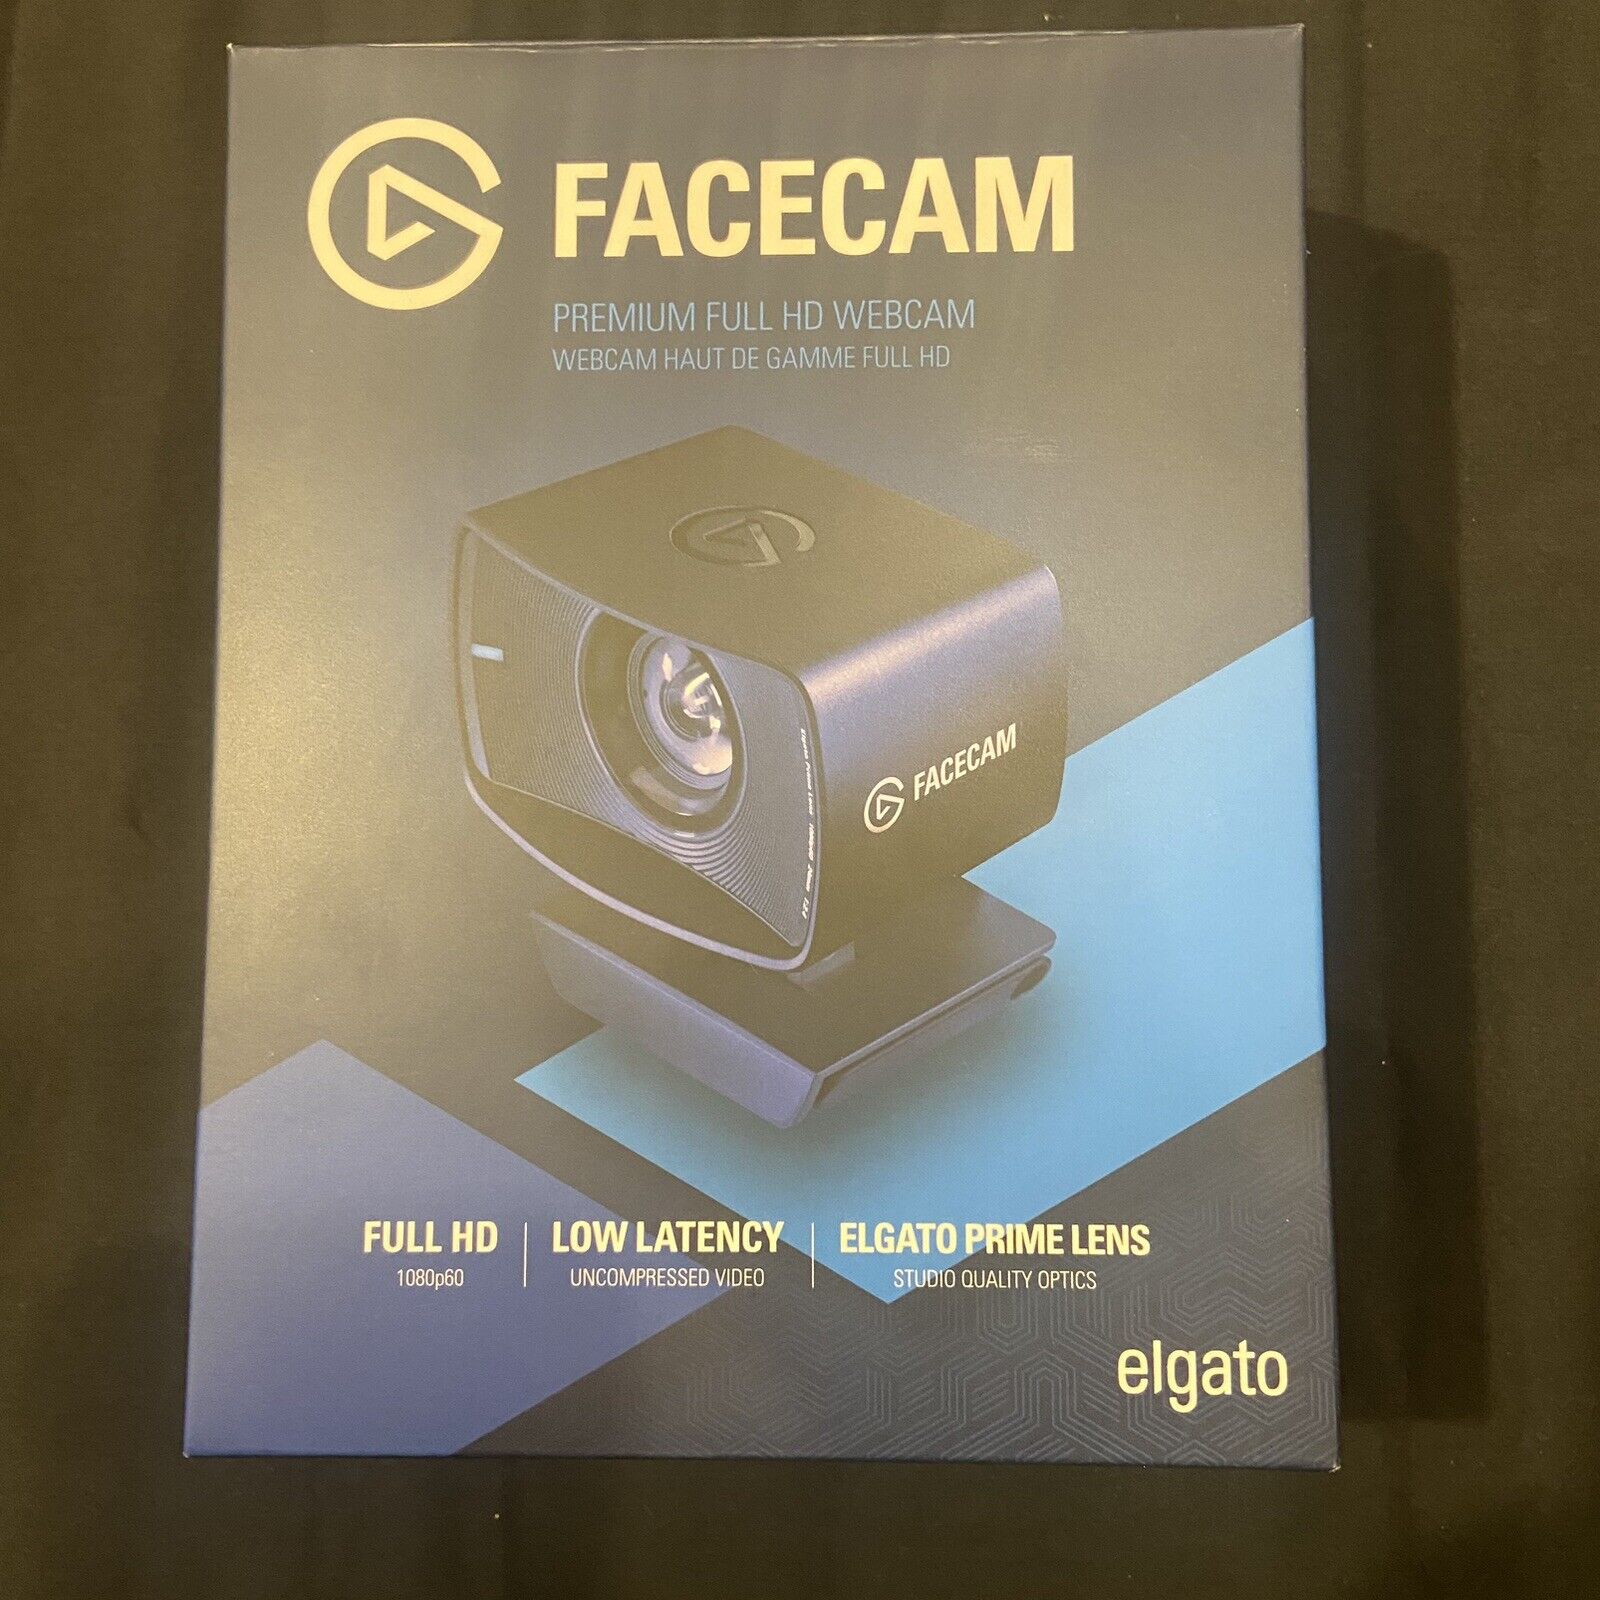 Elgato Facecam 1080p60 Full HD Webcam 20WAA9901 USB-C, Great For Gaming or Calls